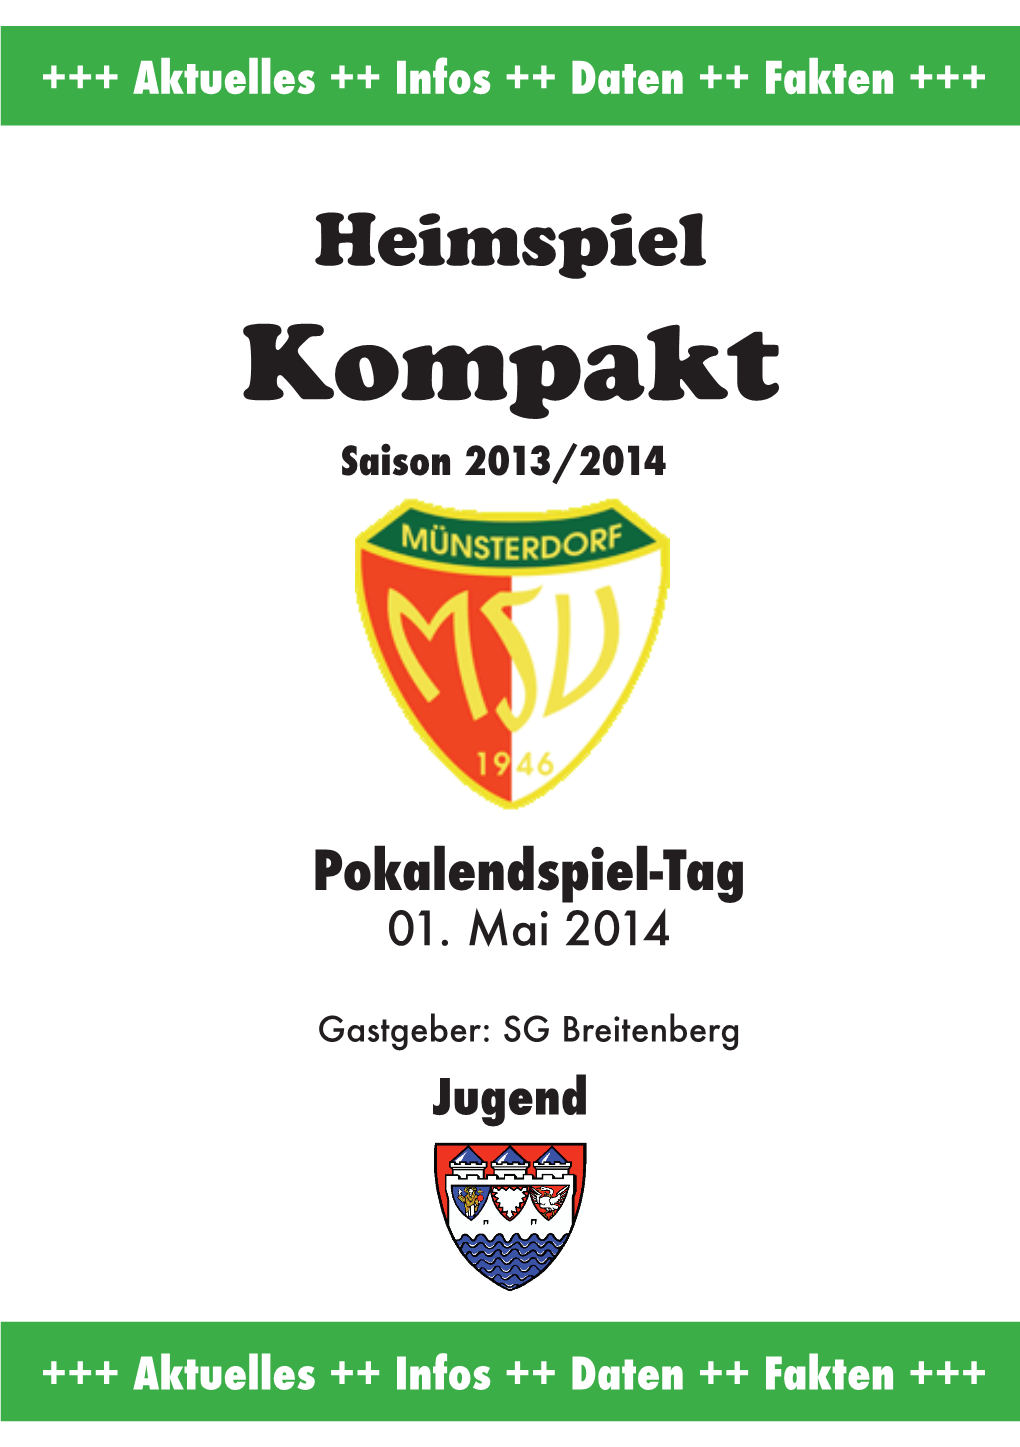 SG Breitenburg- Jugendﬁ Naltag Saison 2013/2014